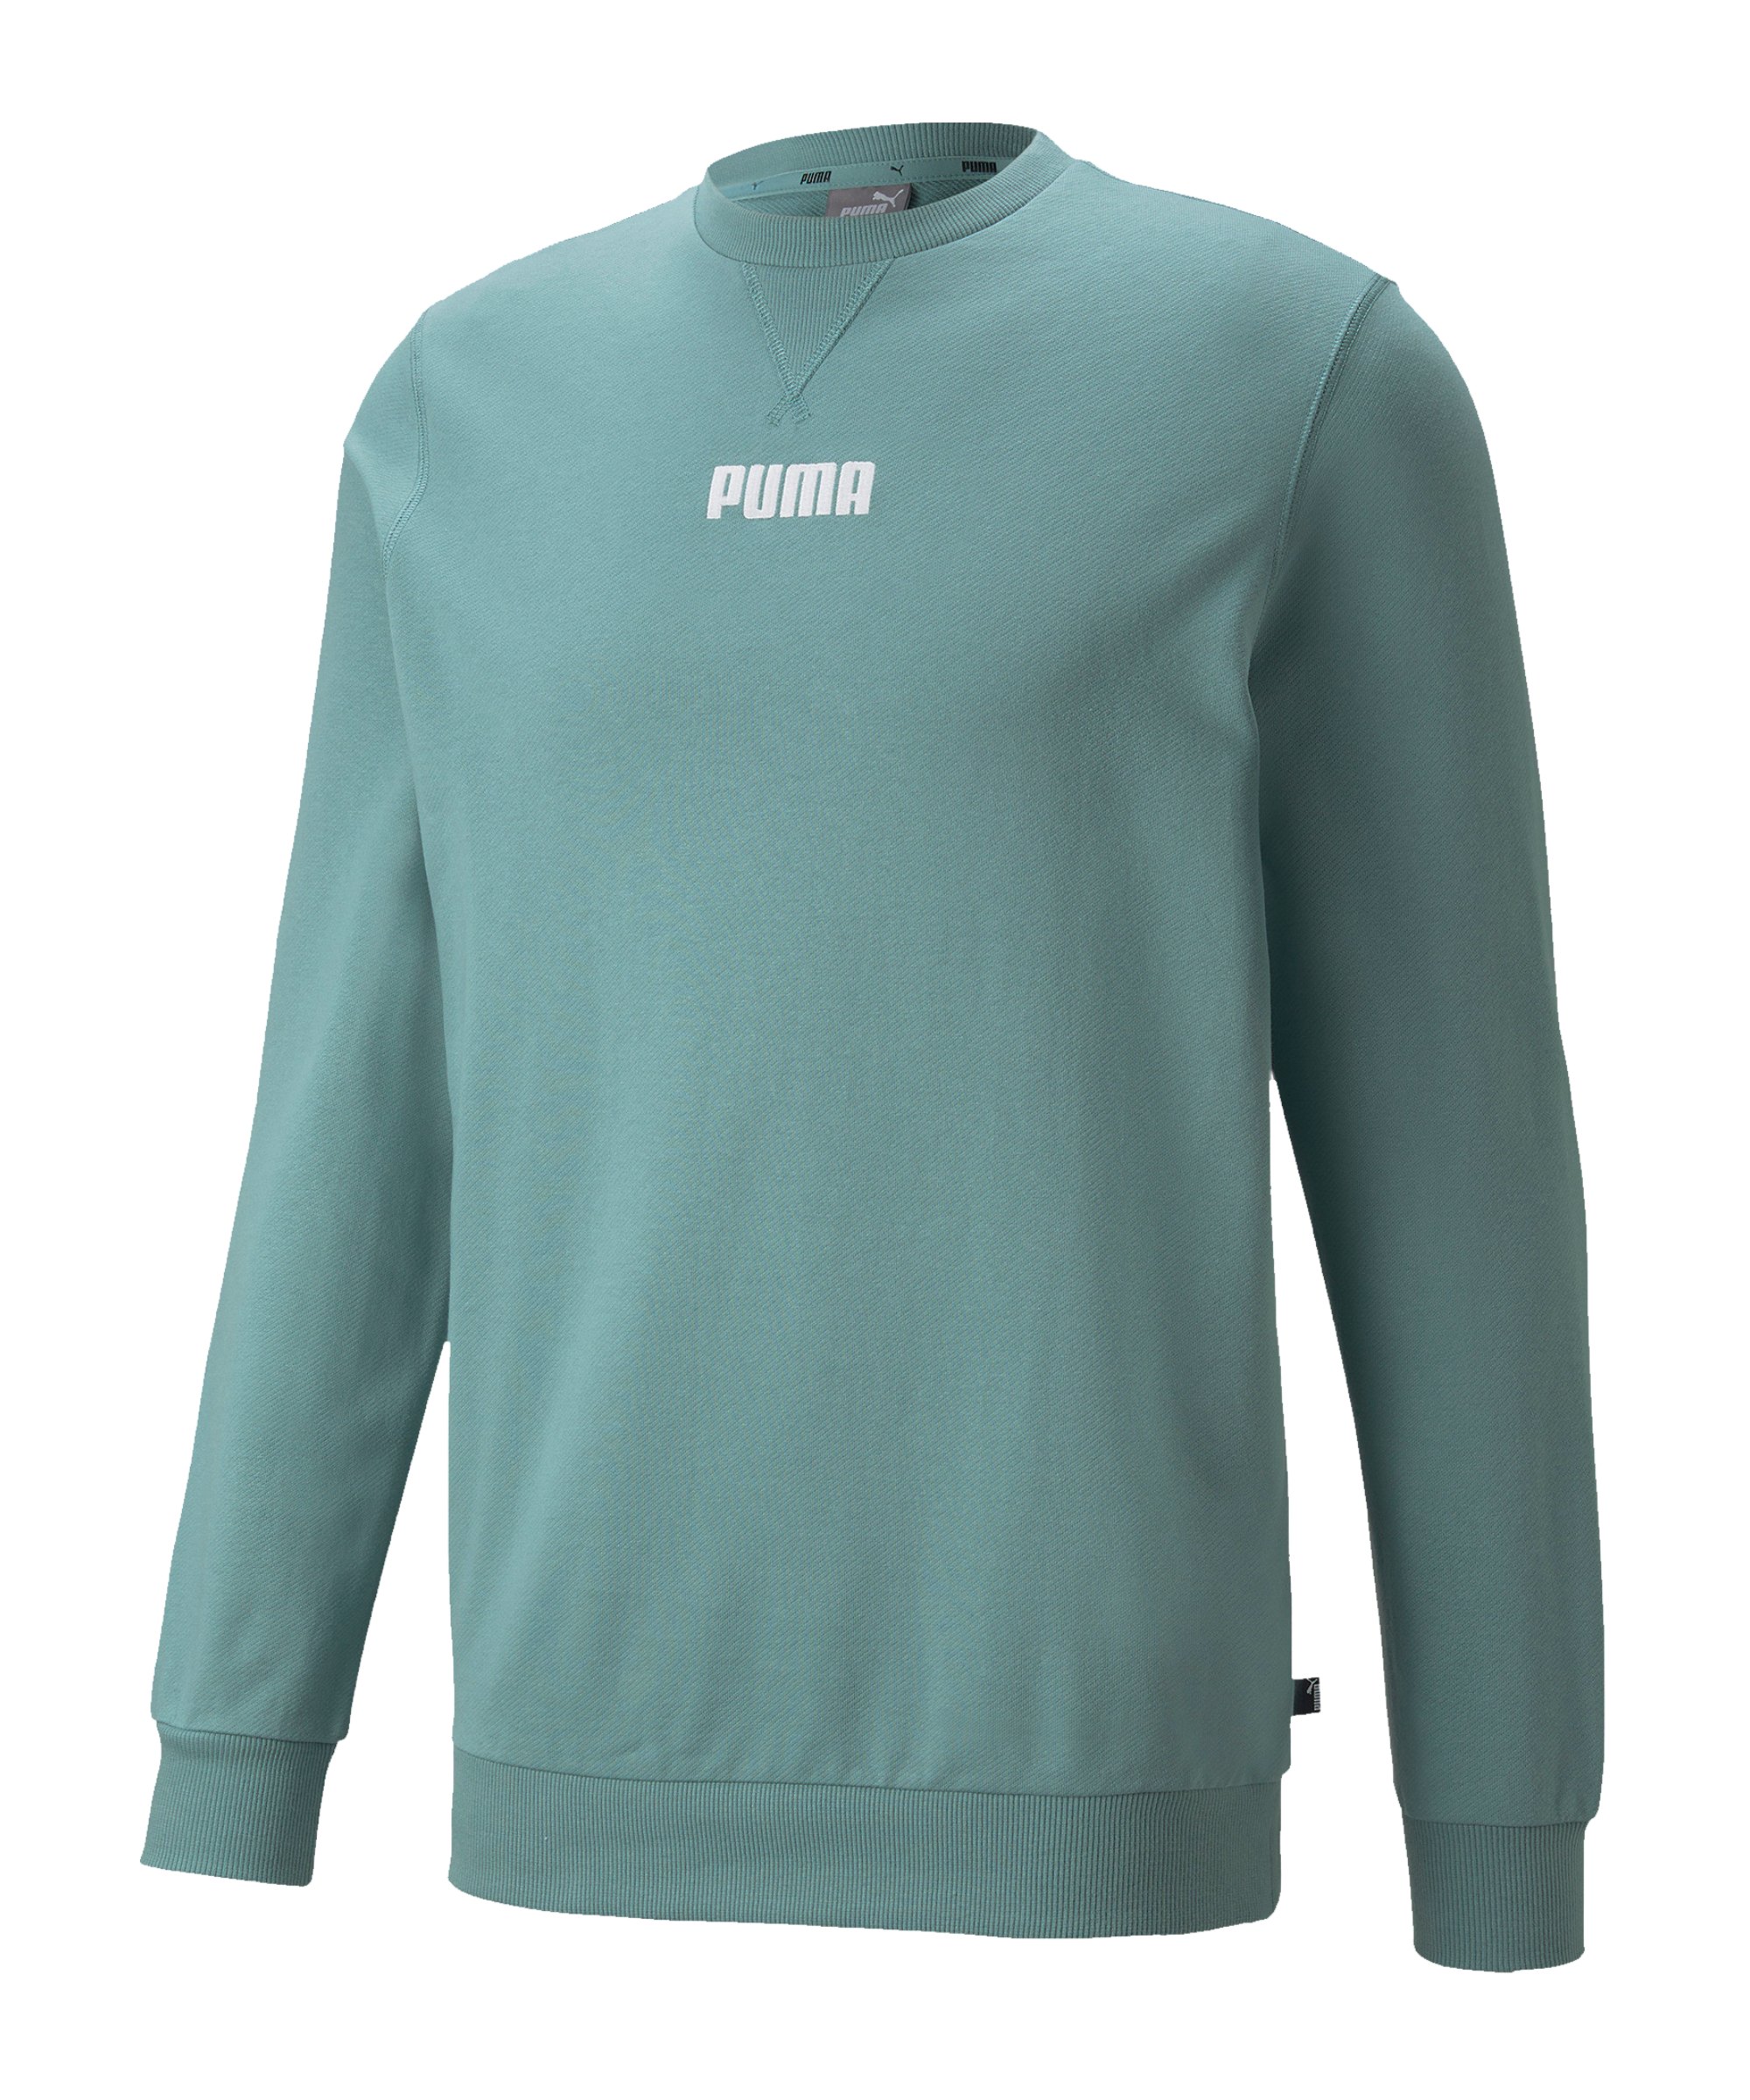 PUMA Modern Basics Sweatshirt Blau F50 - blau